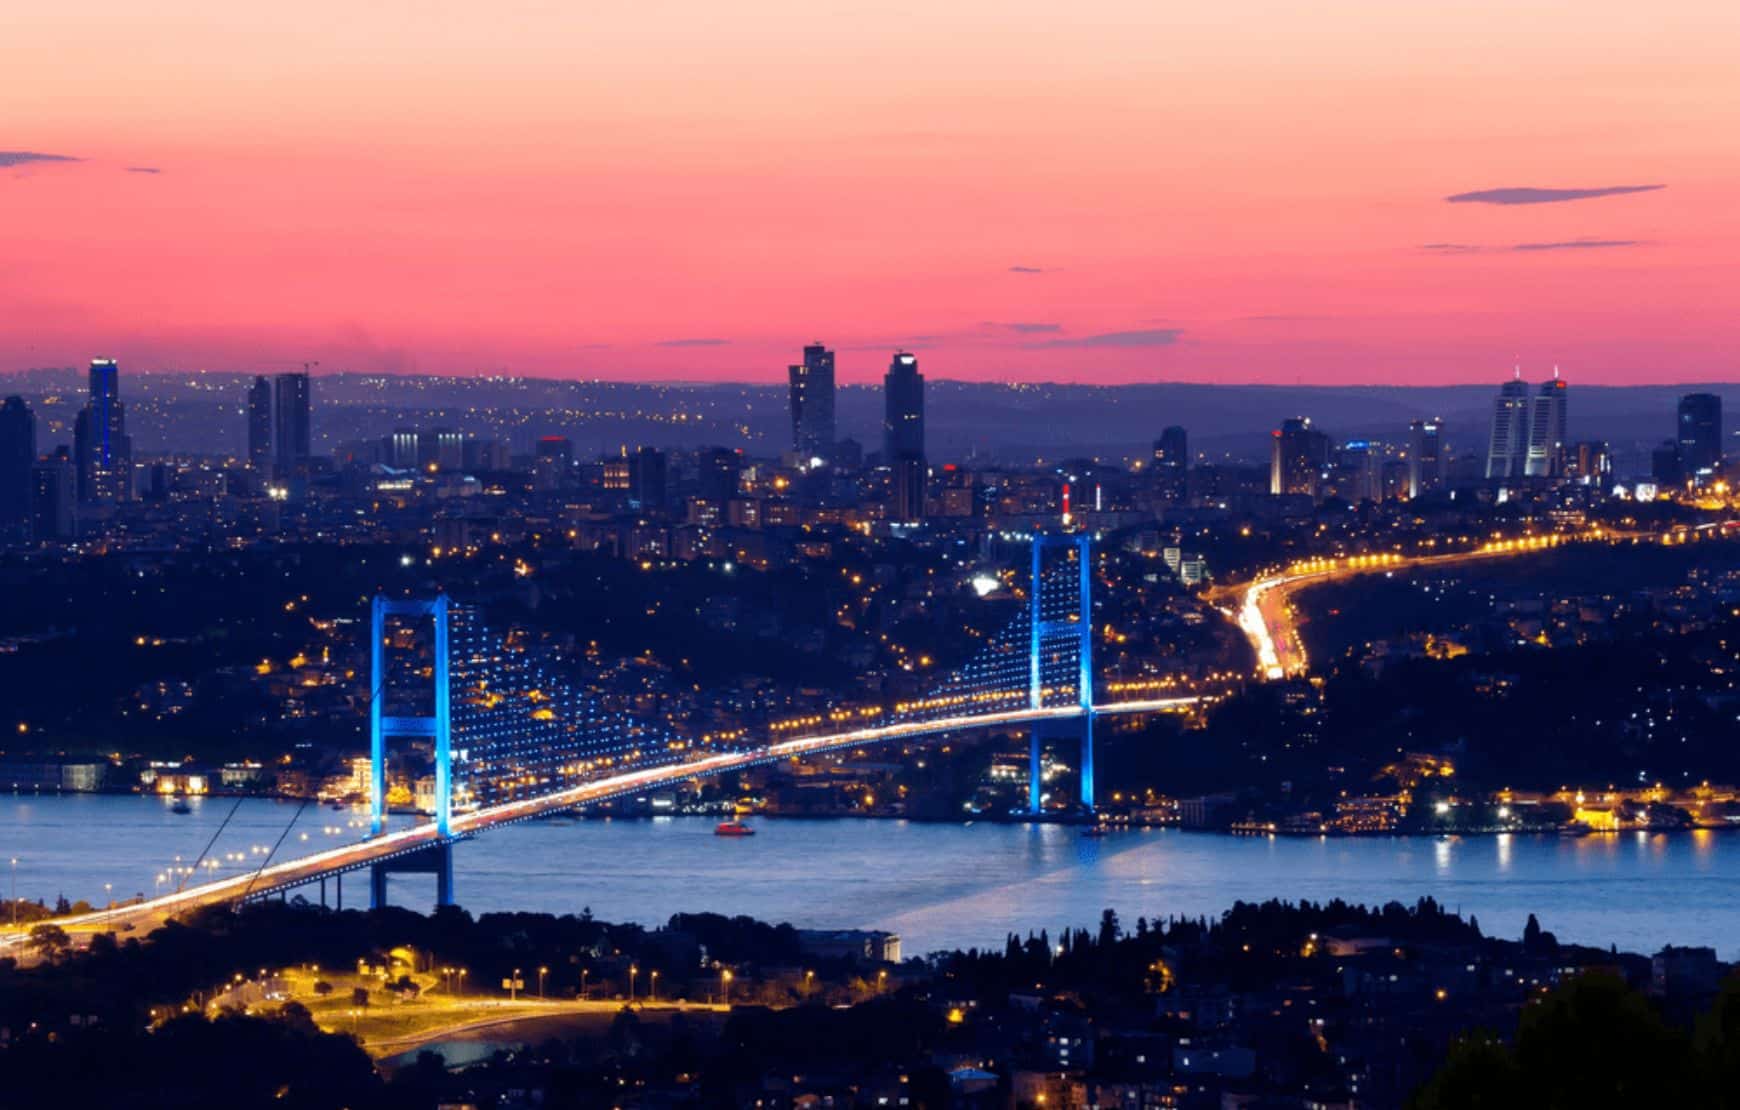 Bosphorus Bridge from above